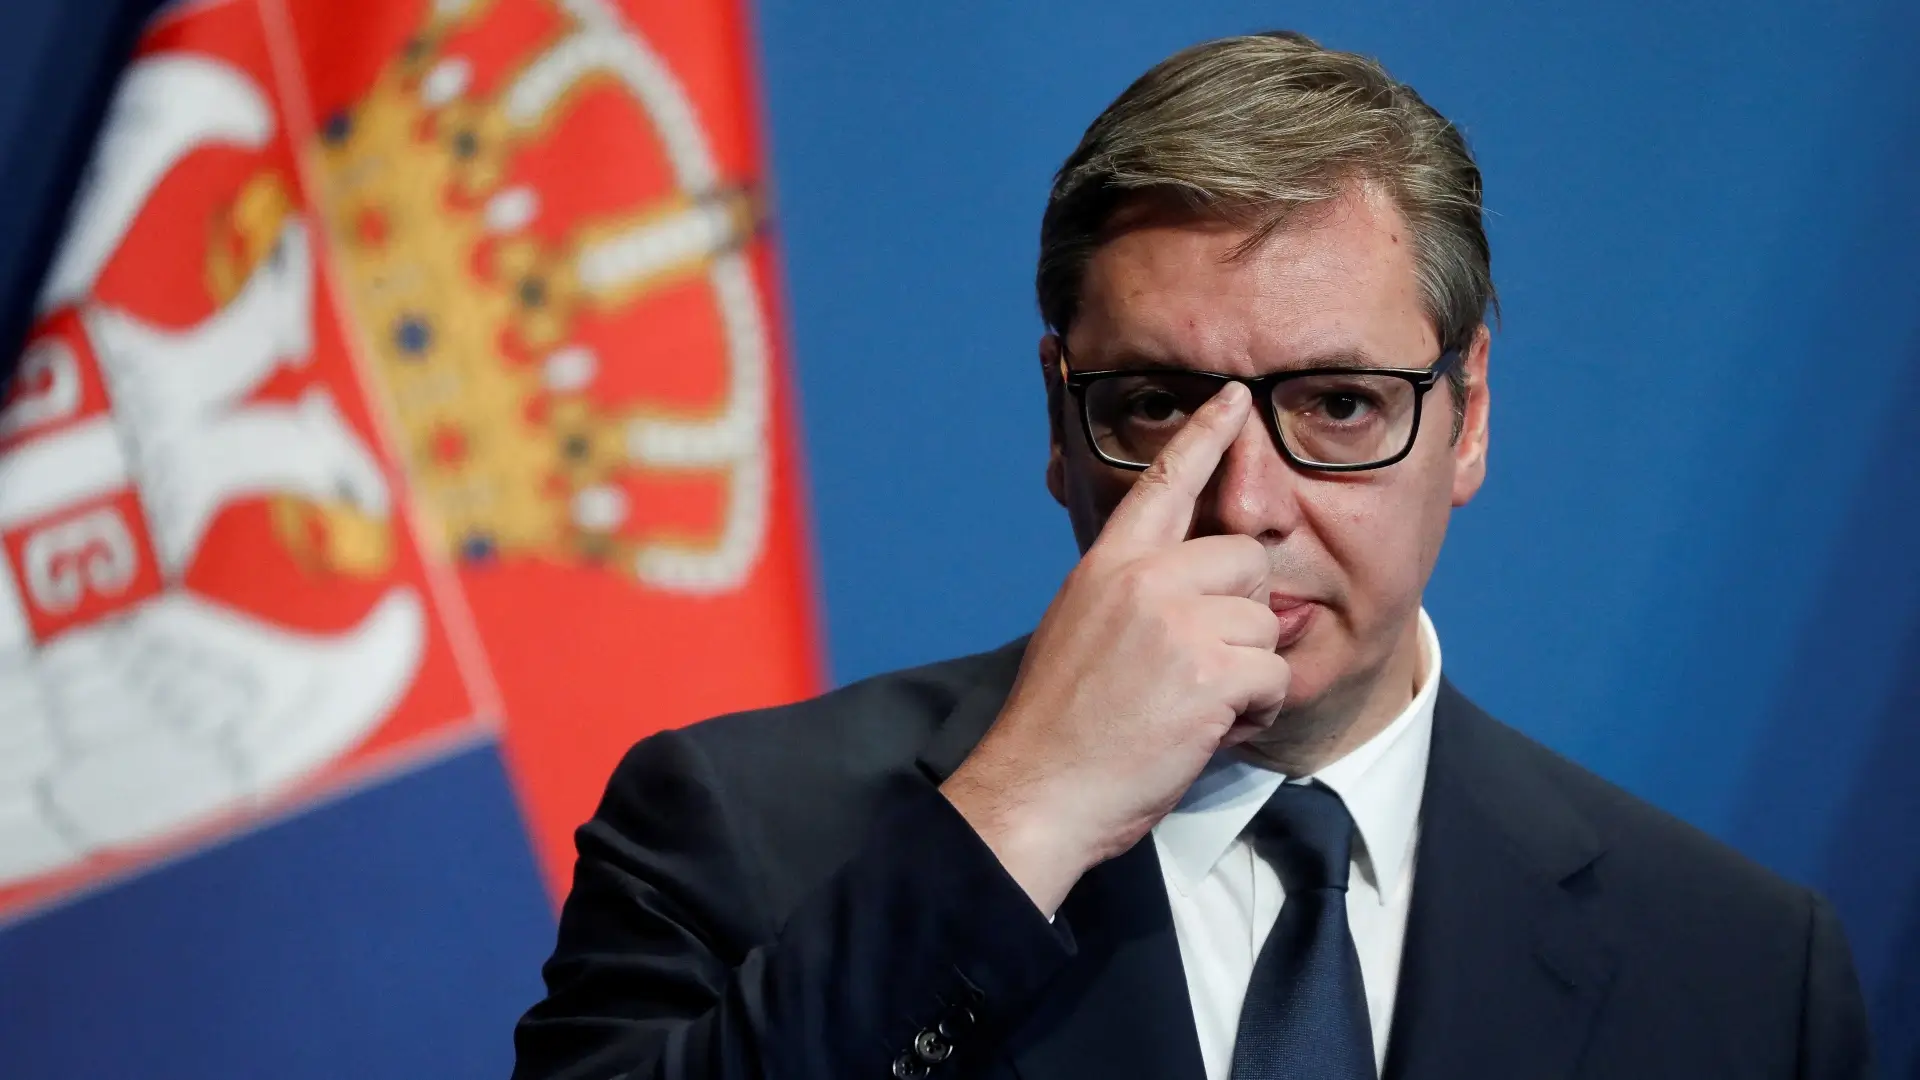 Szakít pártjával a szerb államfő? Lemond a pártelnökségről Aleksandar Vucic